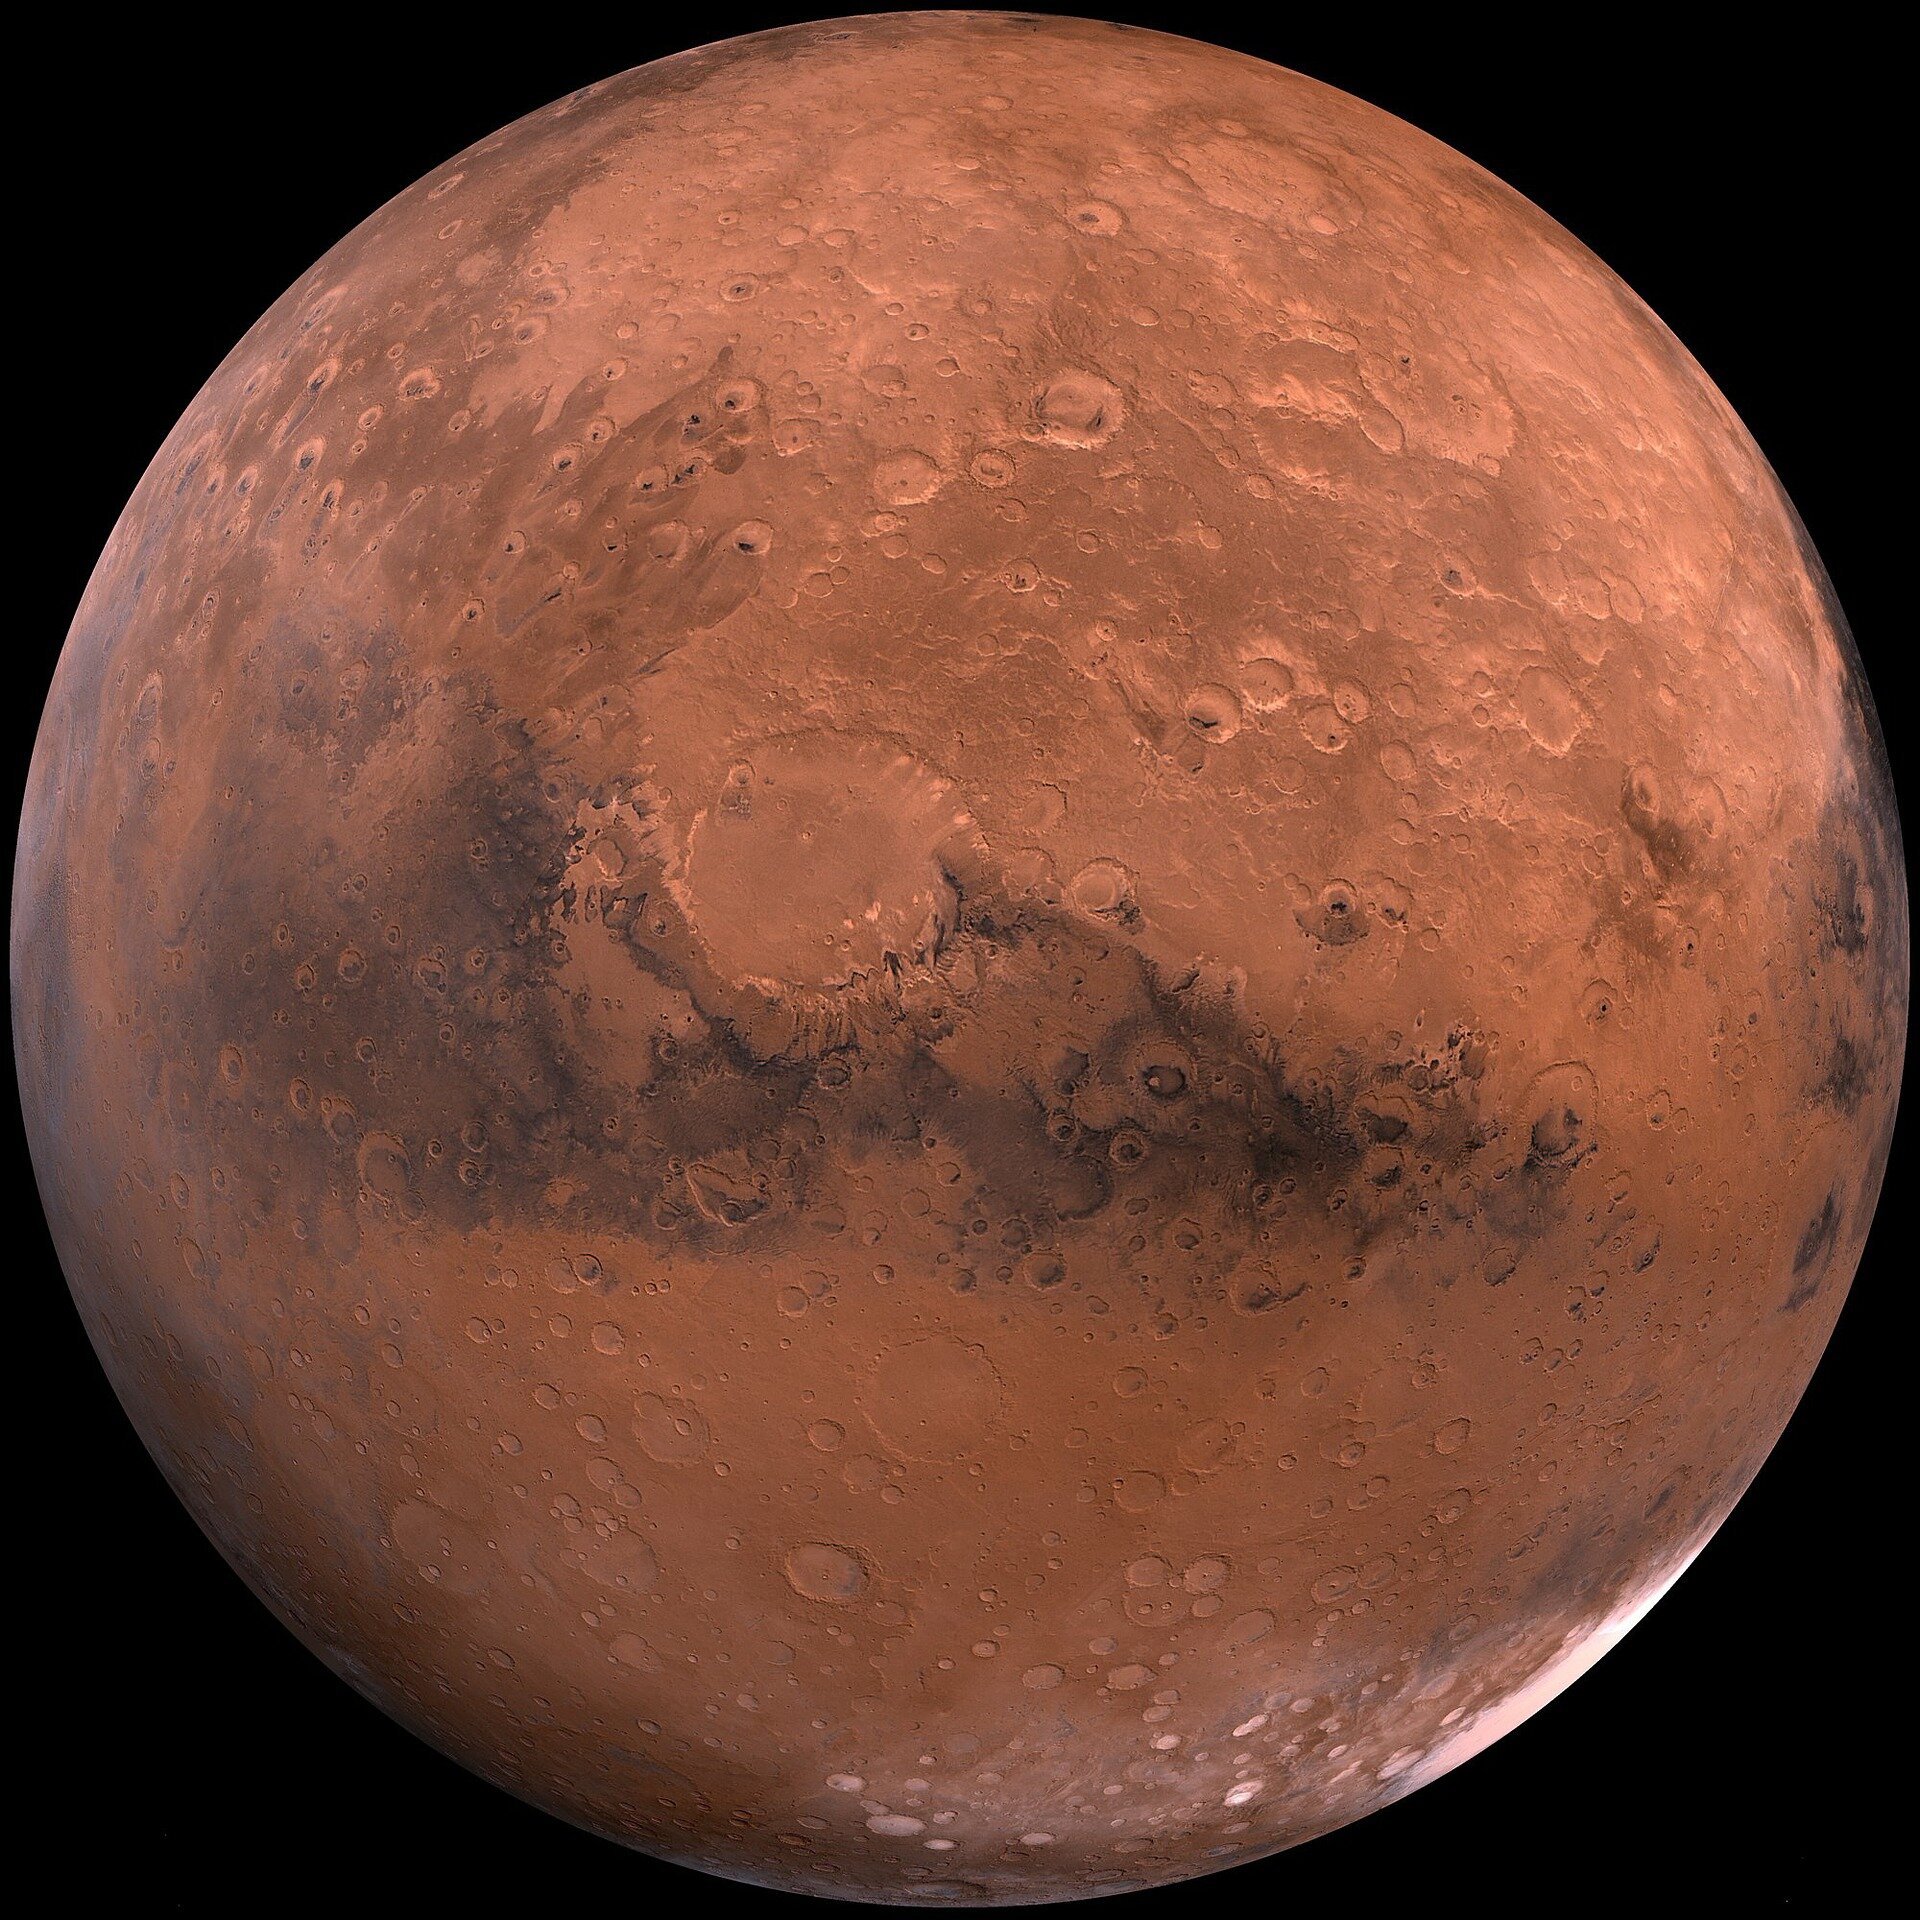 أعلن العلماء عن اختراق في تحديد أصل الحياة على الأرض وربما المريخ